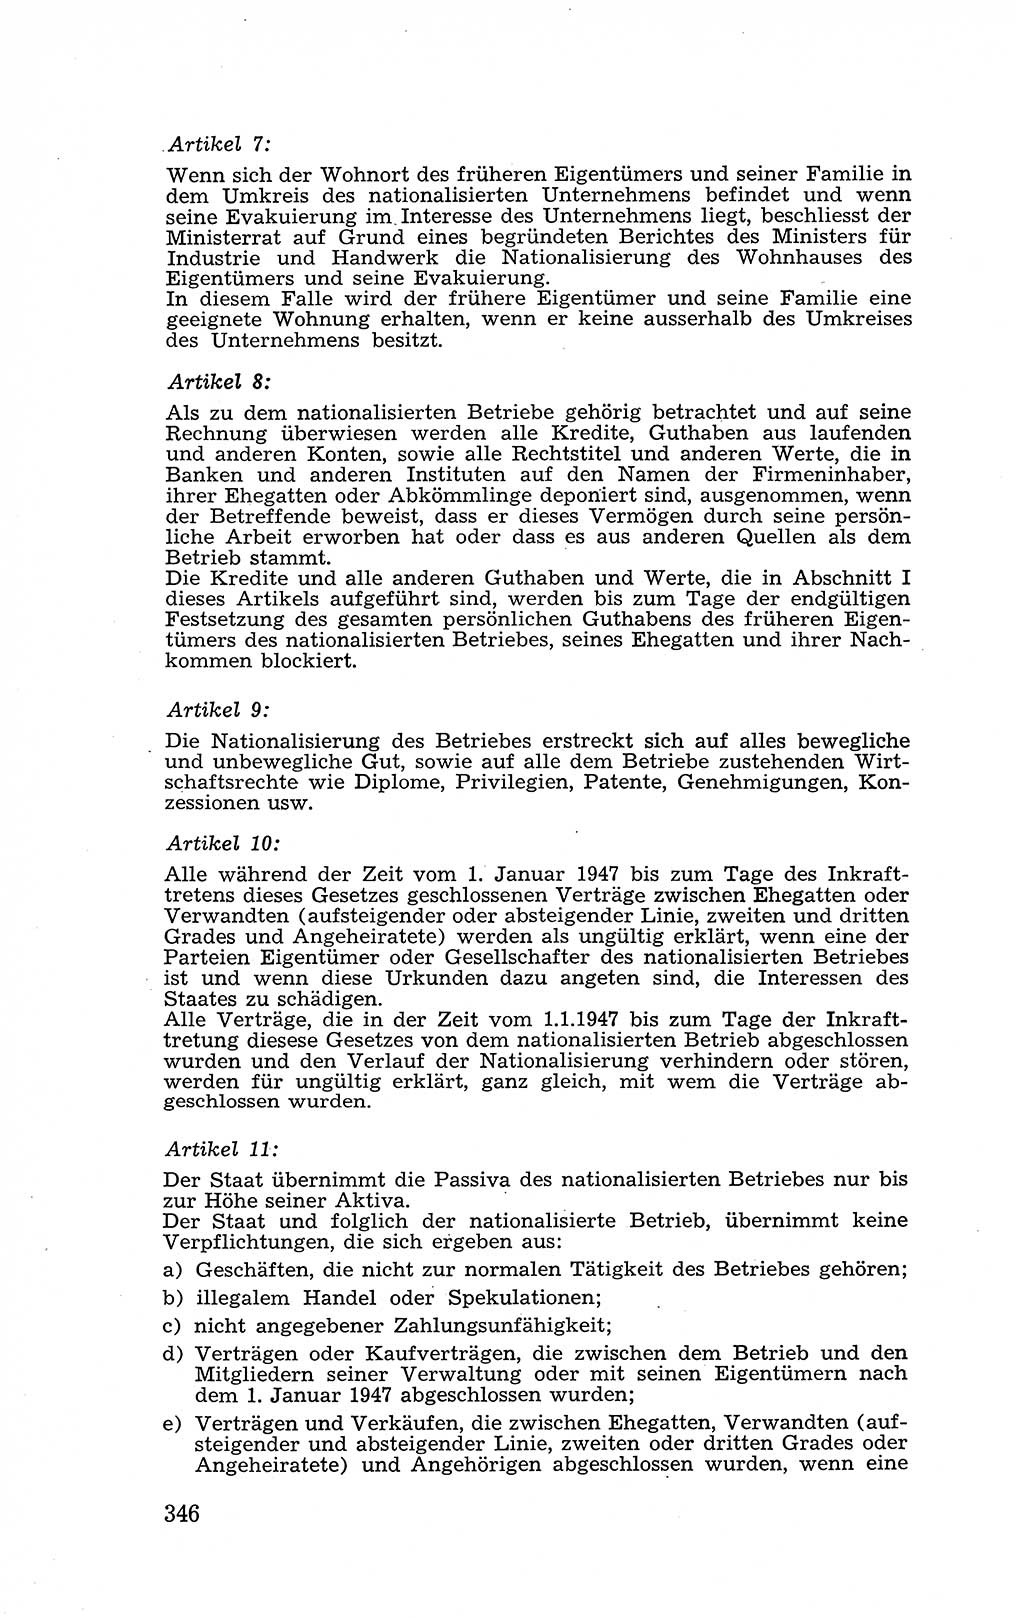 Recht in Fesseln, Dokumente, Internationale Juristen-Kommission [Bundesrepublik Deutschland (BRD)] 1955, Seite 346 (R. Dok. IJK BRD 1955, S. 346)